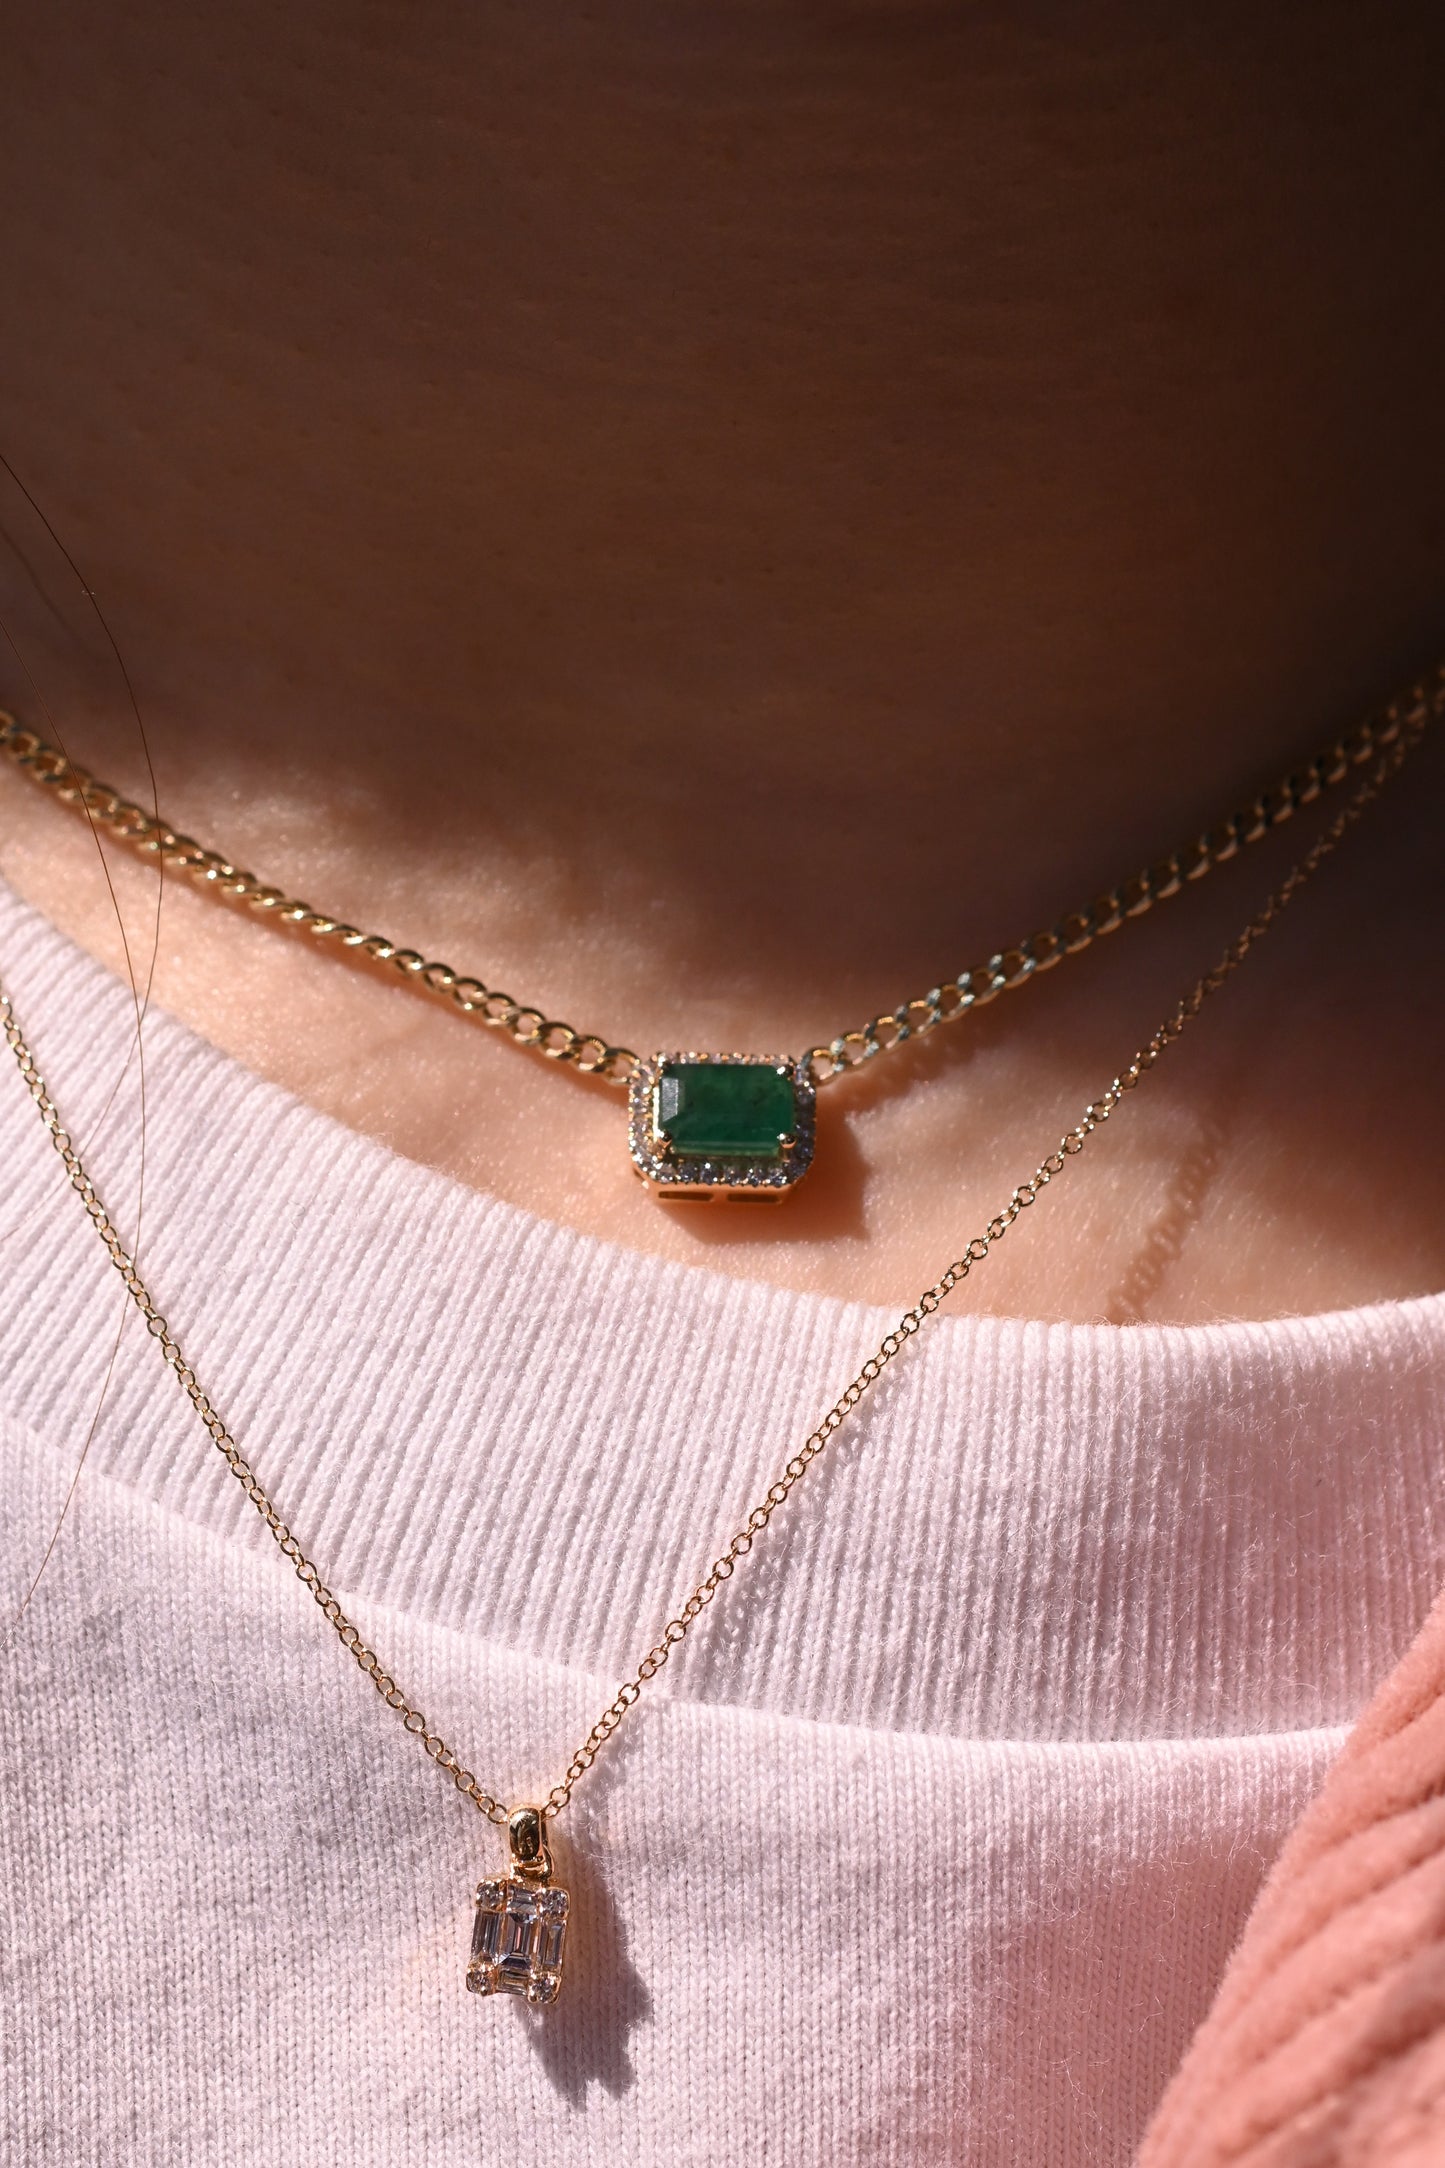 Xia Precious Gems Cuban Chain Necklace